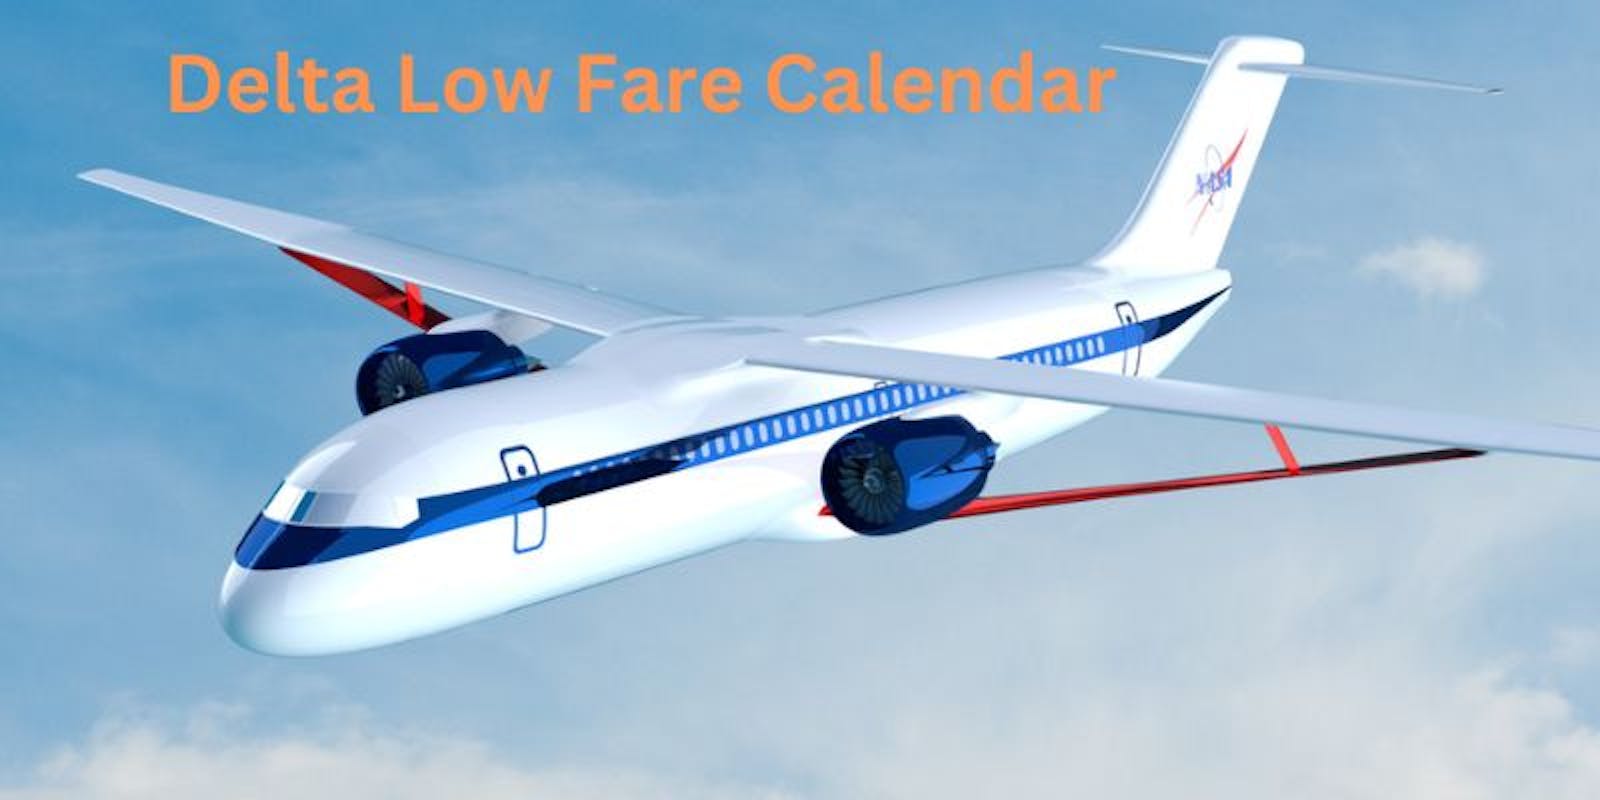 A Guide to the Delta Low Fare Calendar